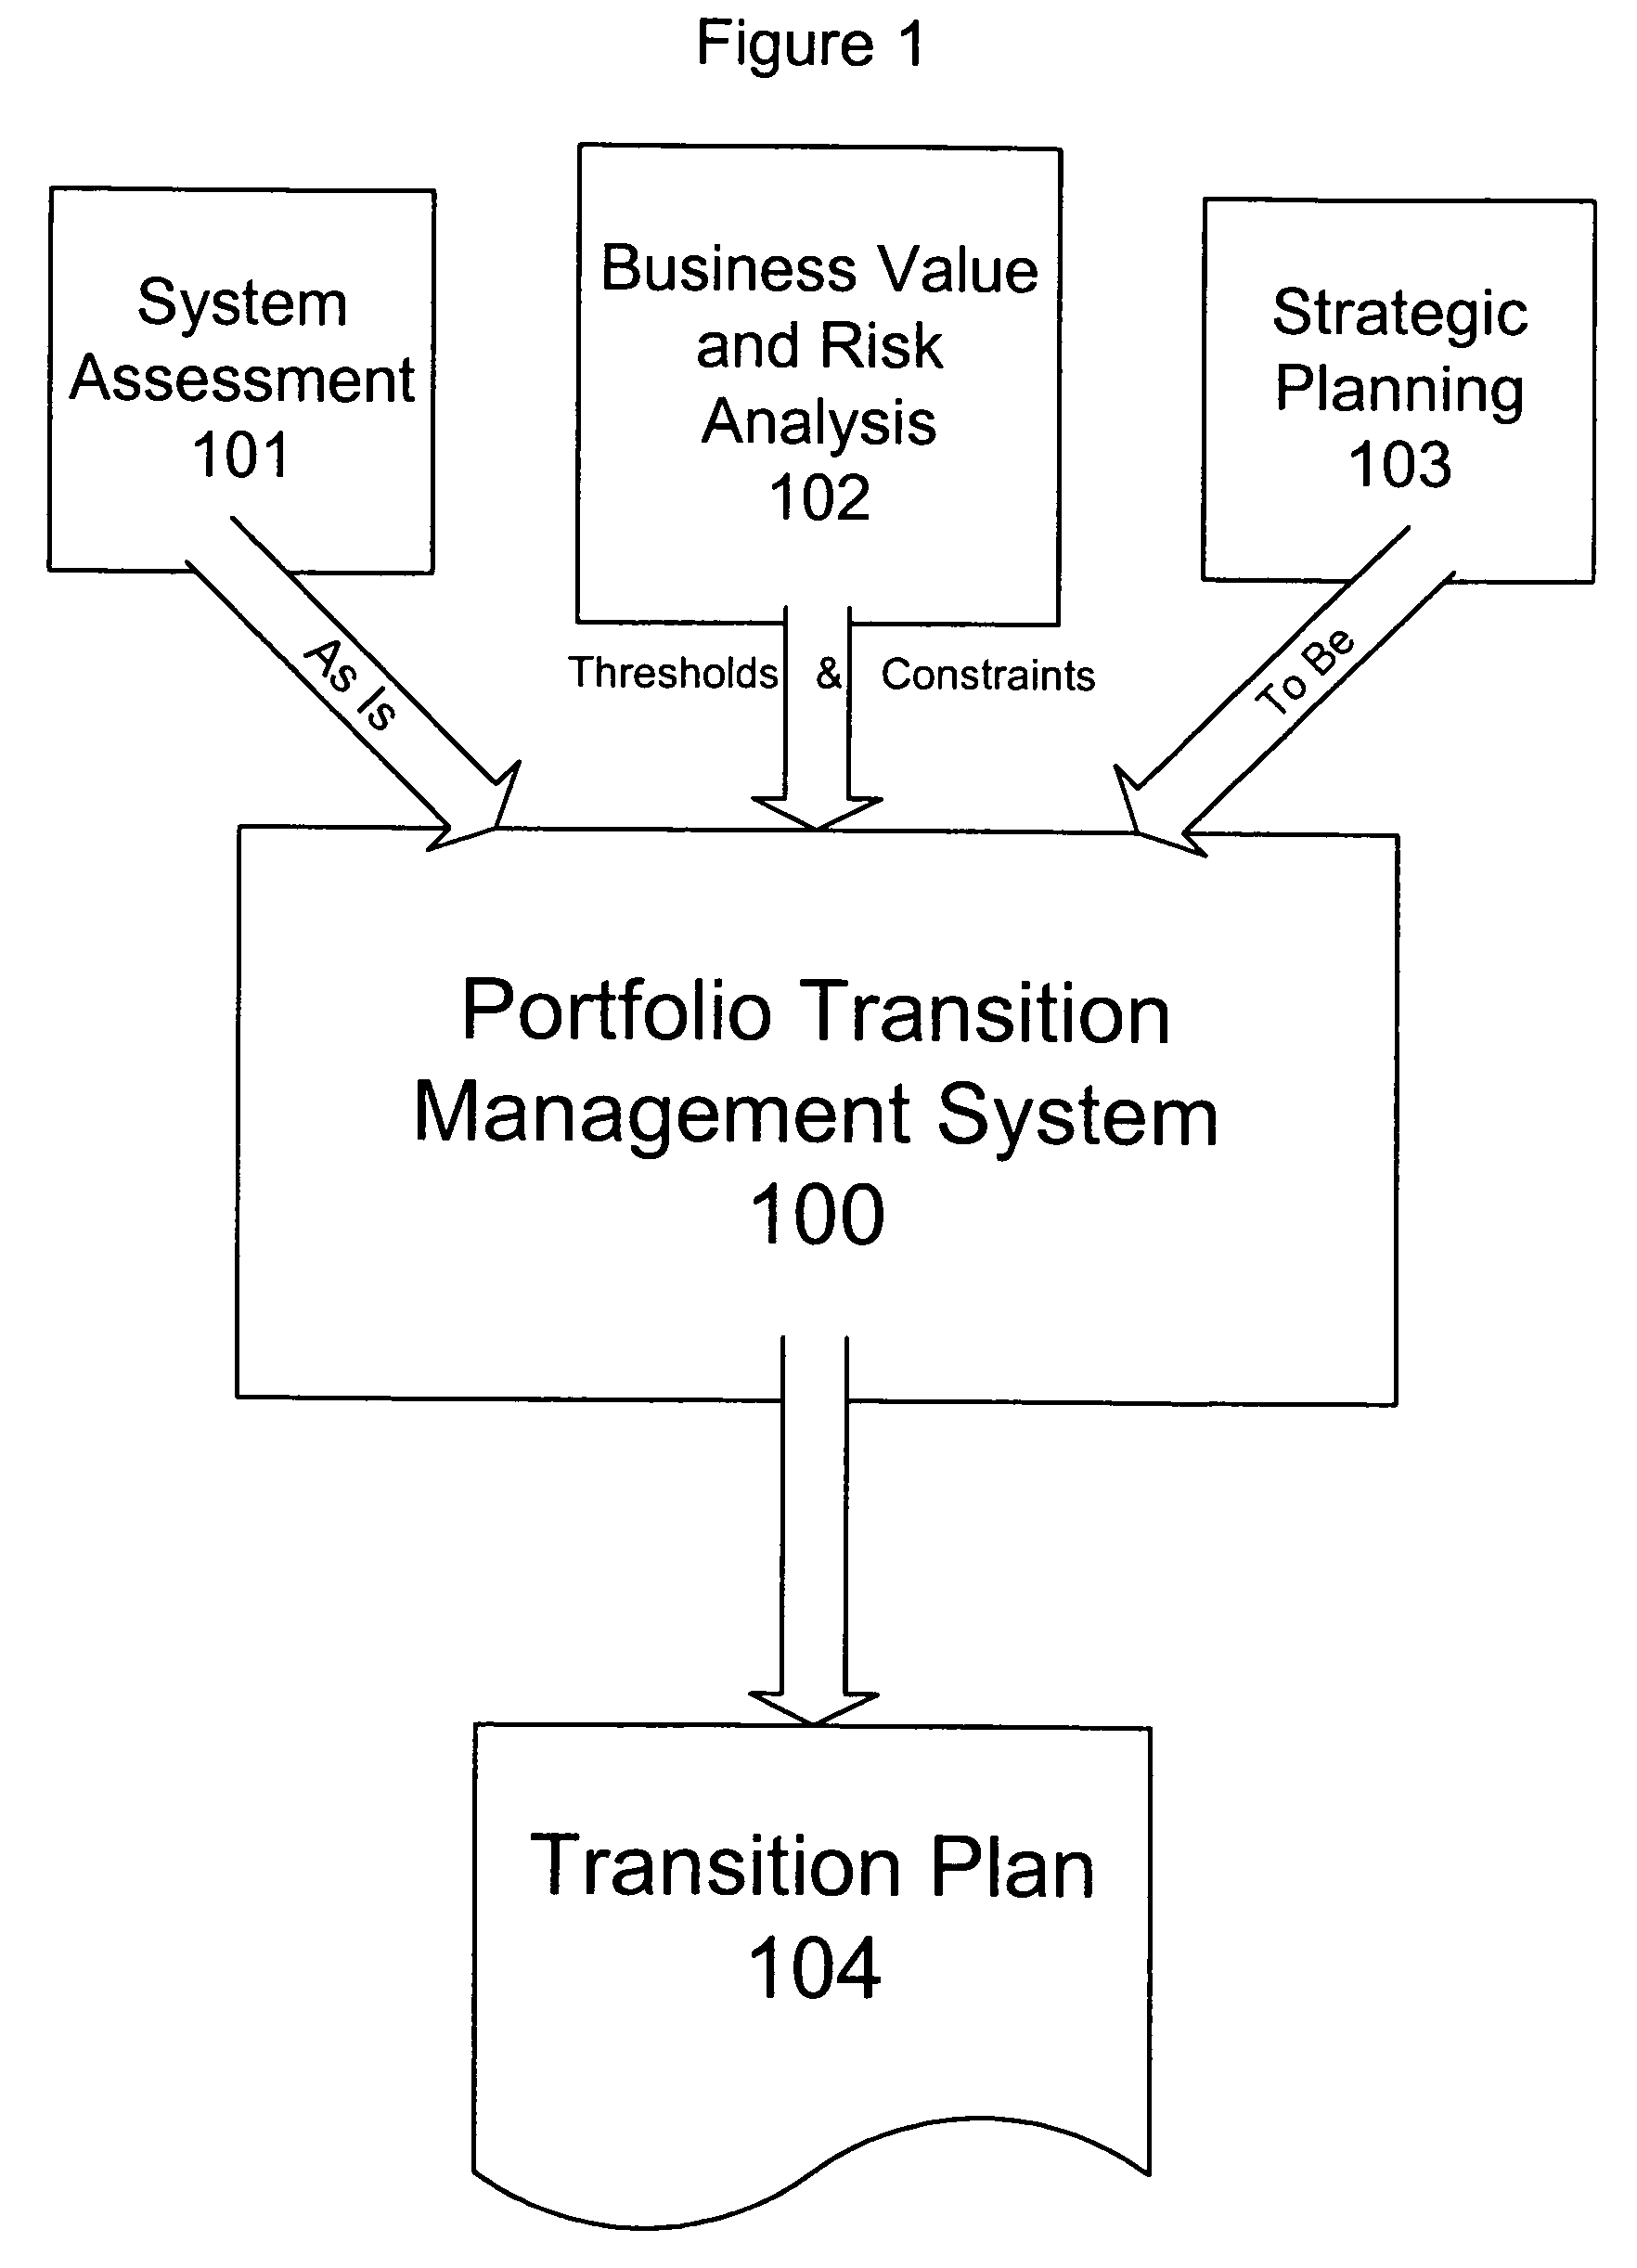 Enterprise portfolio analysis using finite state Markov decision process